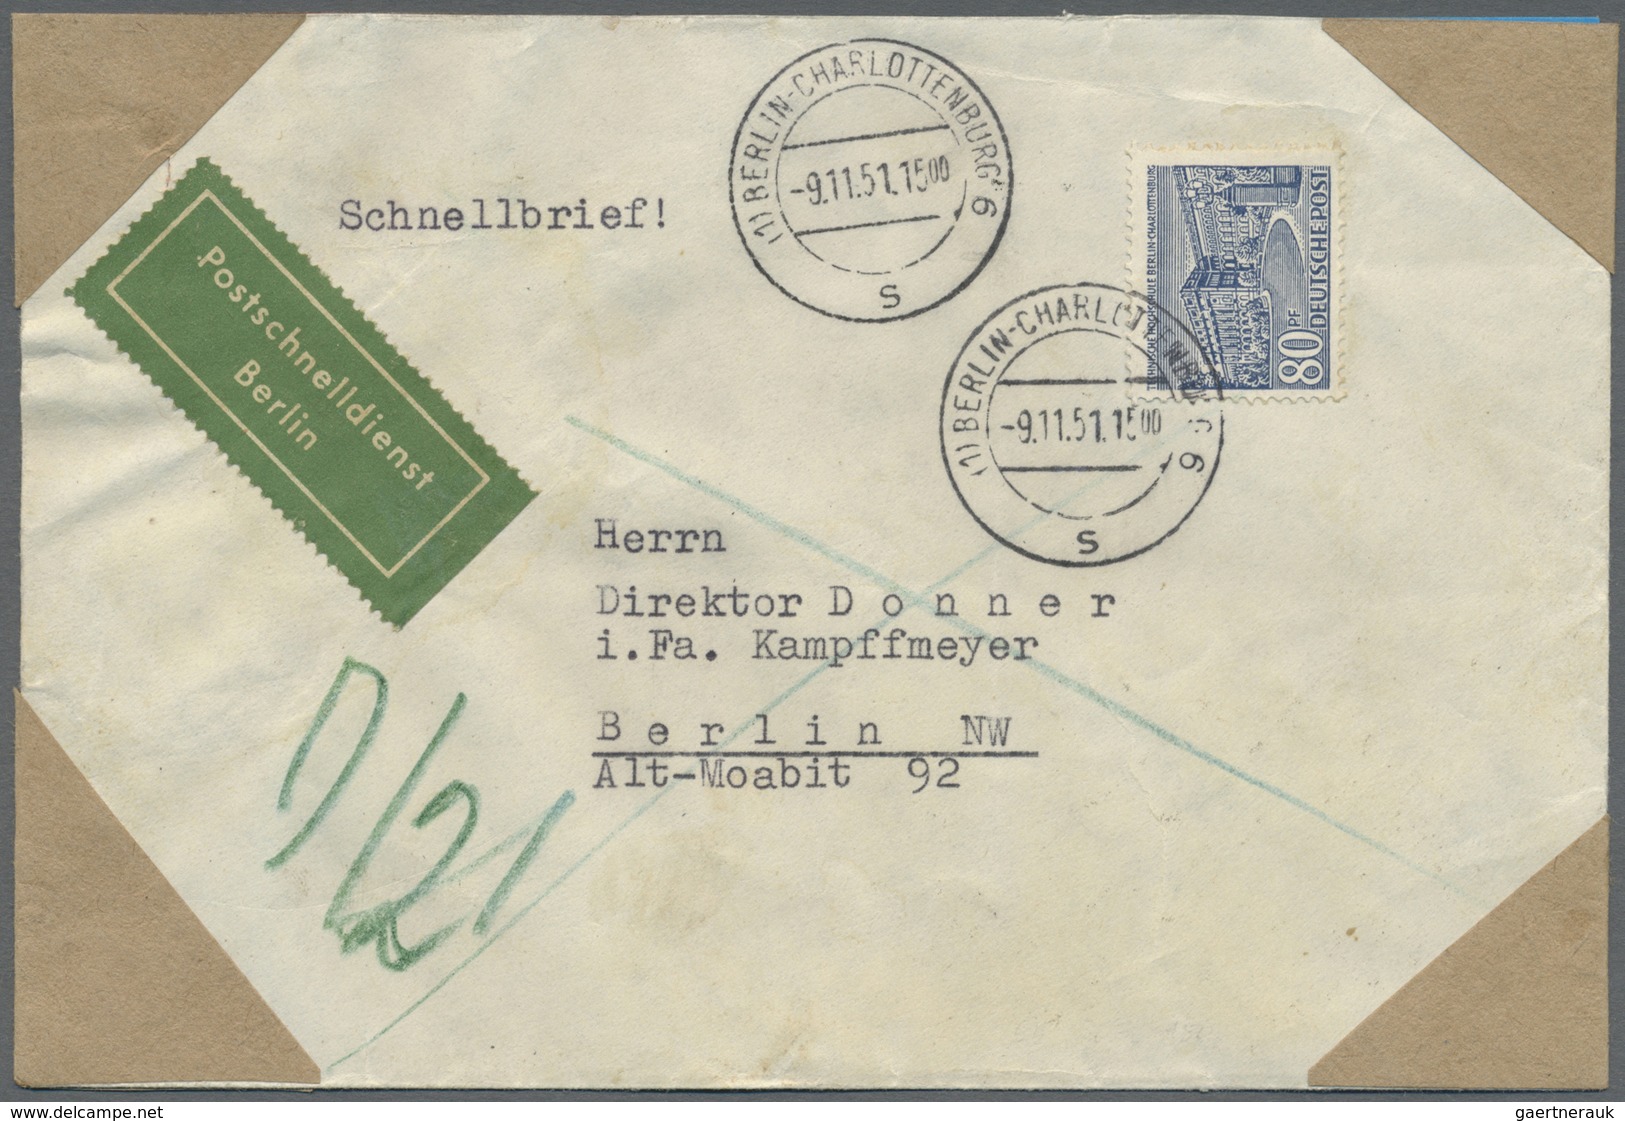 Br Berlin - Postschnelldienst: 1951:  Schnelldienstbrief 80 Pfennig Mit 2 X 40 Pfennig Bauten Ab Berlin - Briefe U. Dokumente